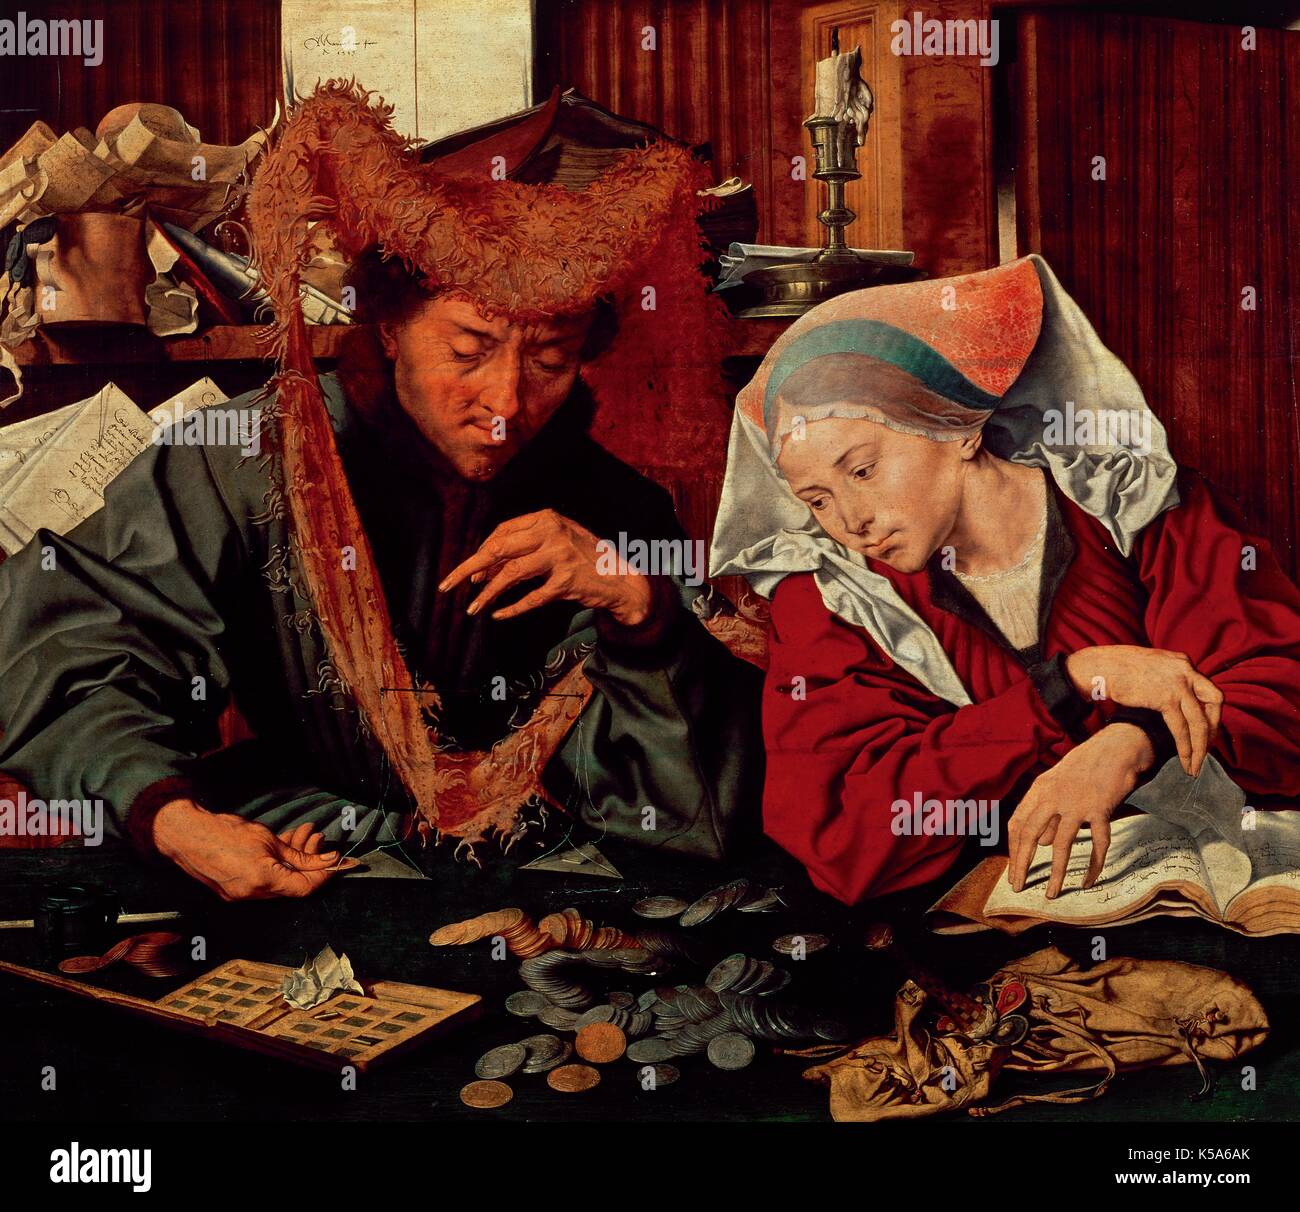 Marinus van Reymerswaele Claeszon (1490-1567). Niederländische Maler. Die geldwechsler und seine Frau, 1539. Öl an Bord. Museo del Prado. Madrid, Spanien. Stockfoto